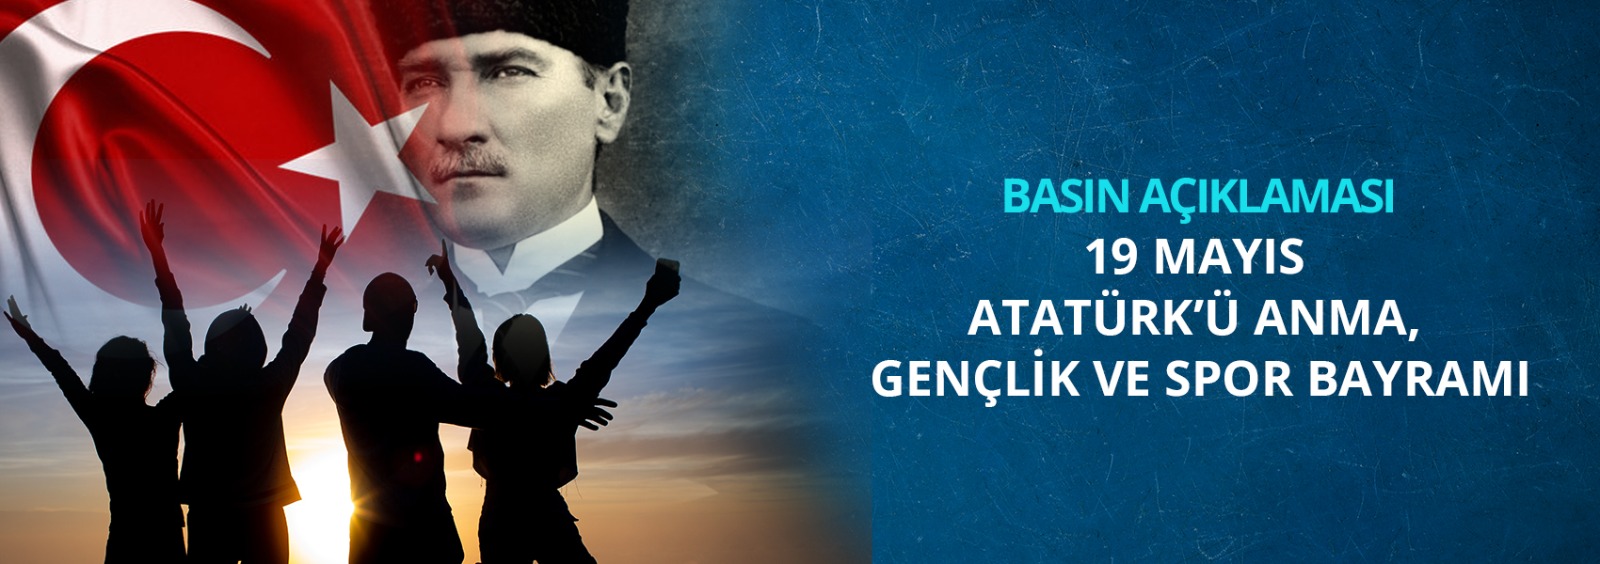 19 Mayıs Atatürk’ü Anma, Gençlik Ve Spor Bayramına İlişkin Basın Açıklaması